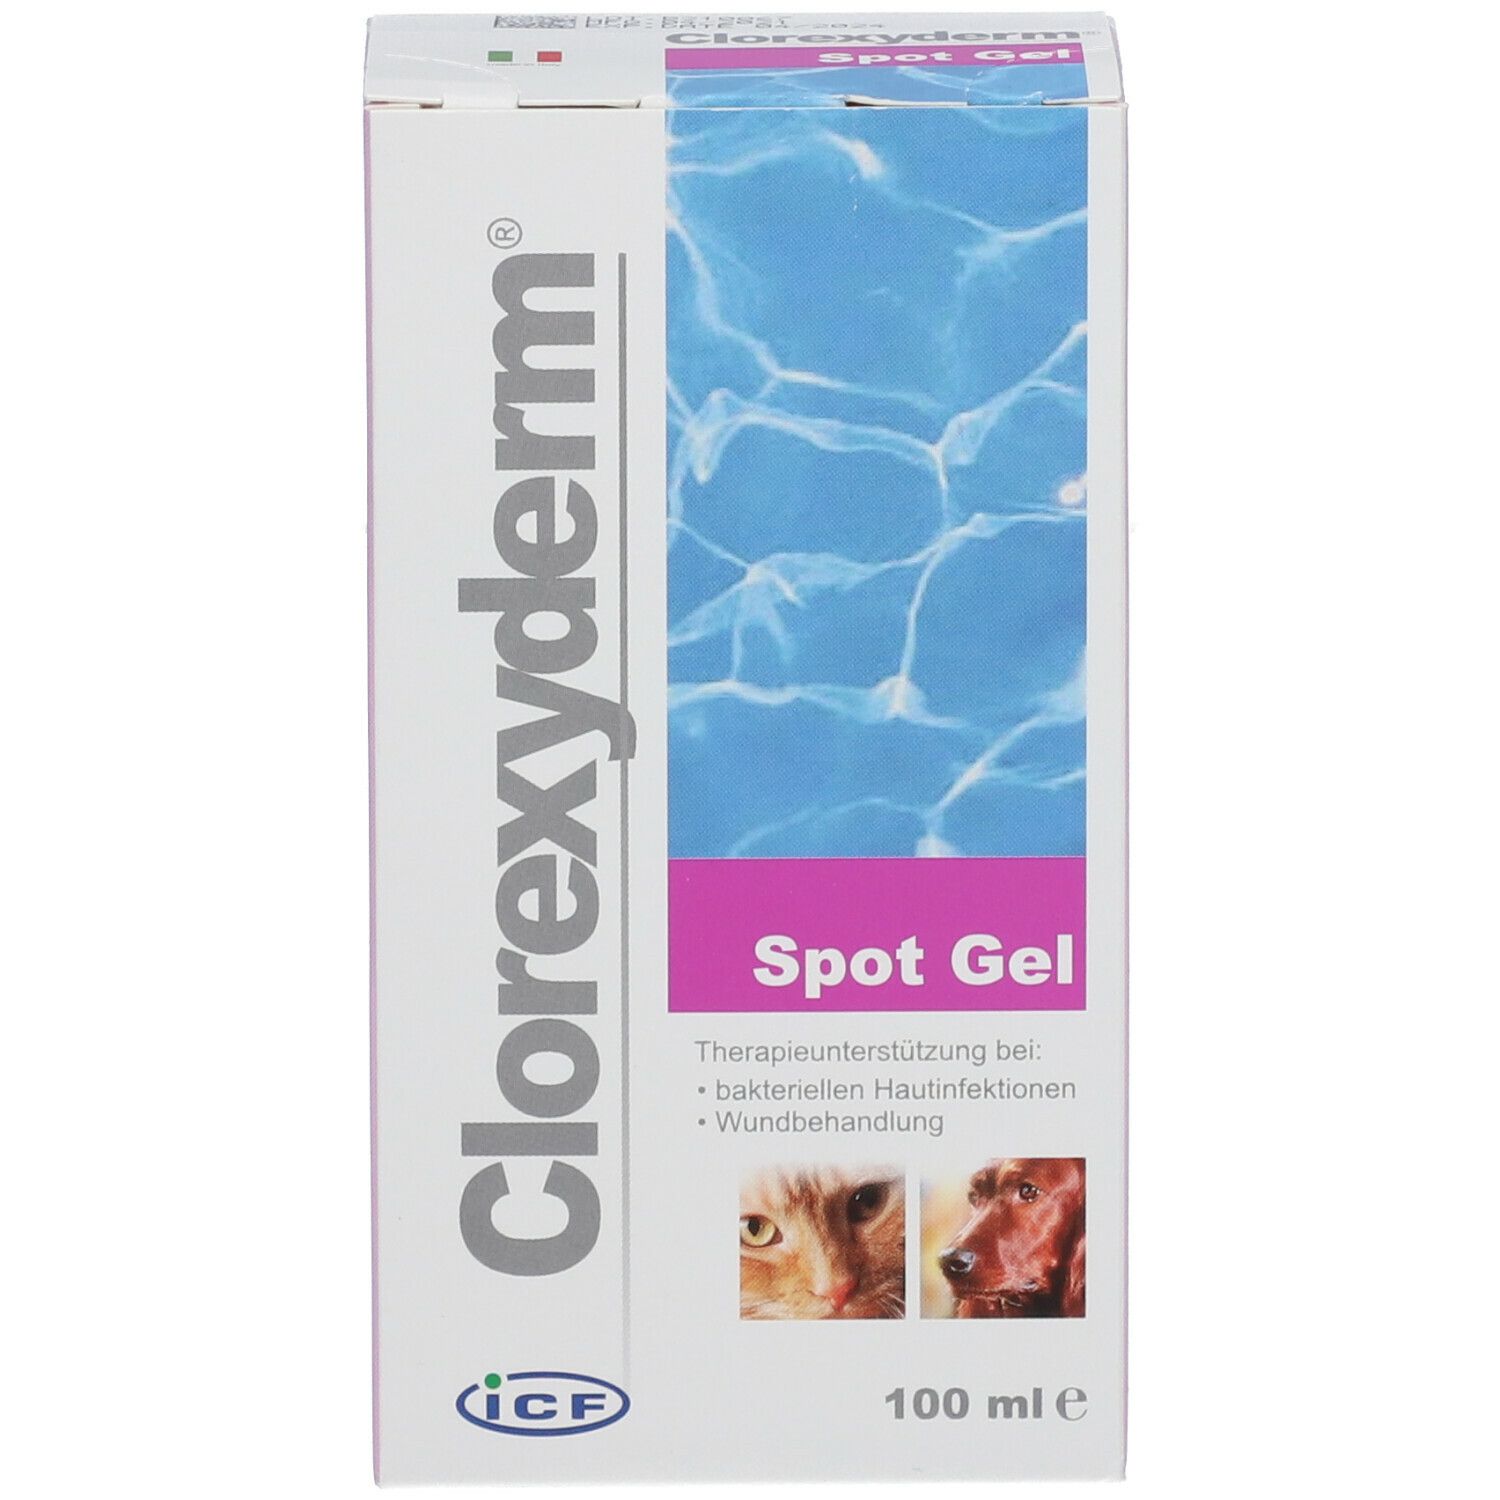 Clorexyderm Spot Gel 100 ml